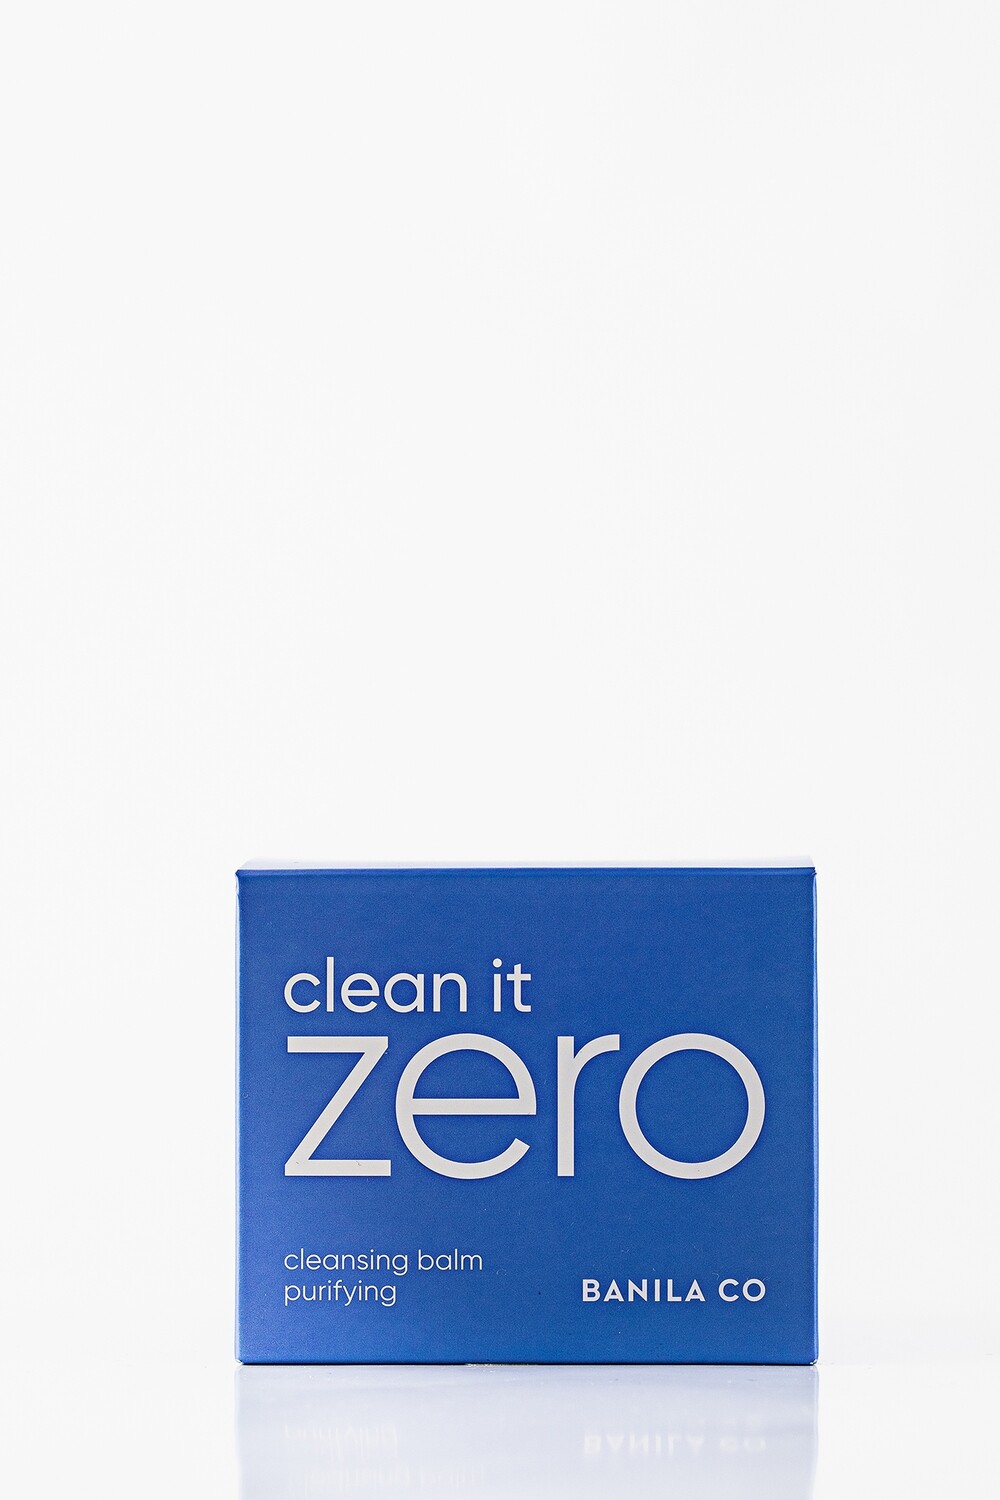 Banila Co Clean It Zero Cleansing Balm Purifying, 100ml